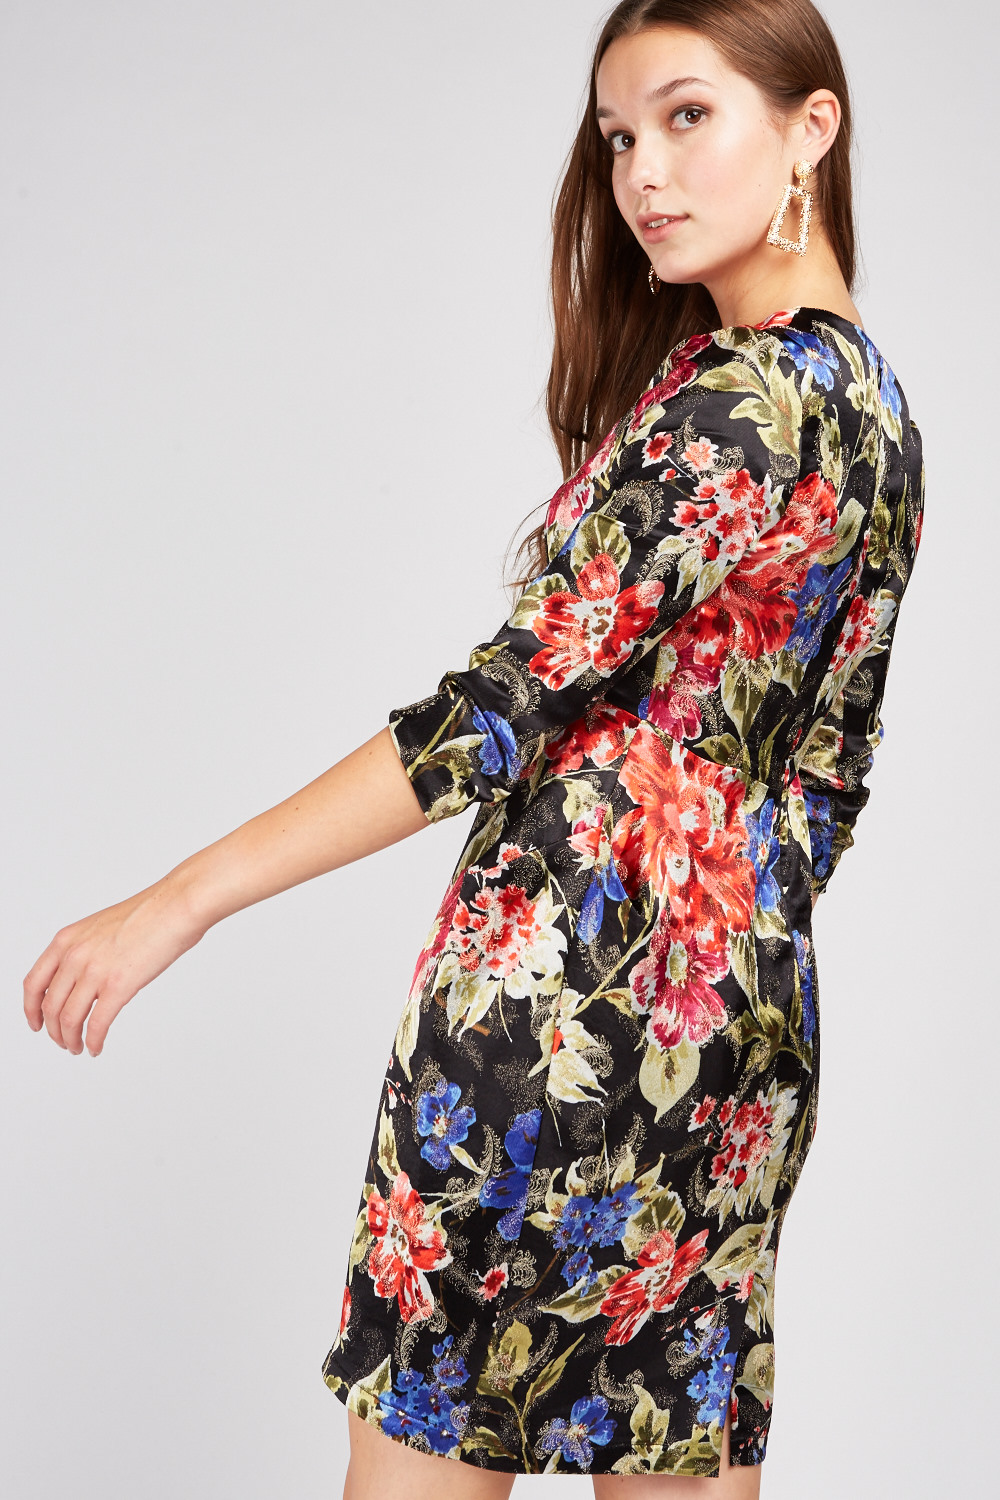 Textured Flower Print Sateen Dress - 3 Colours - Just $6